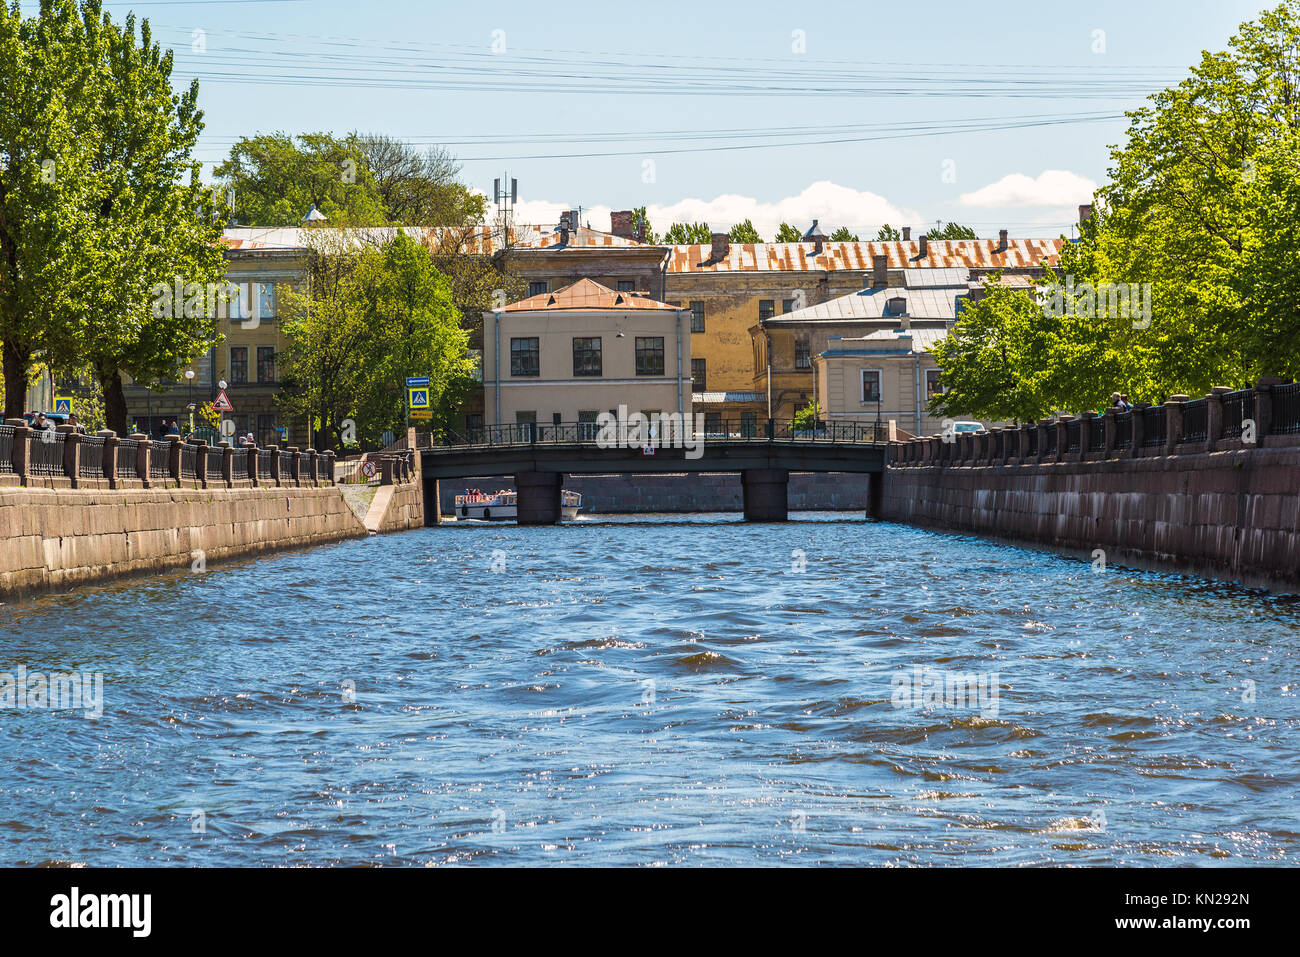 Saint-pétersbourg, Russie - le 4 juin 2017. Canal Kryukov, Smezny bridge et un hôpital psychiatrique numéro 5 Banque D'Images